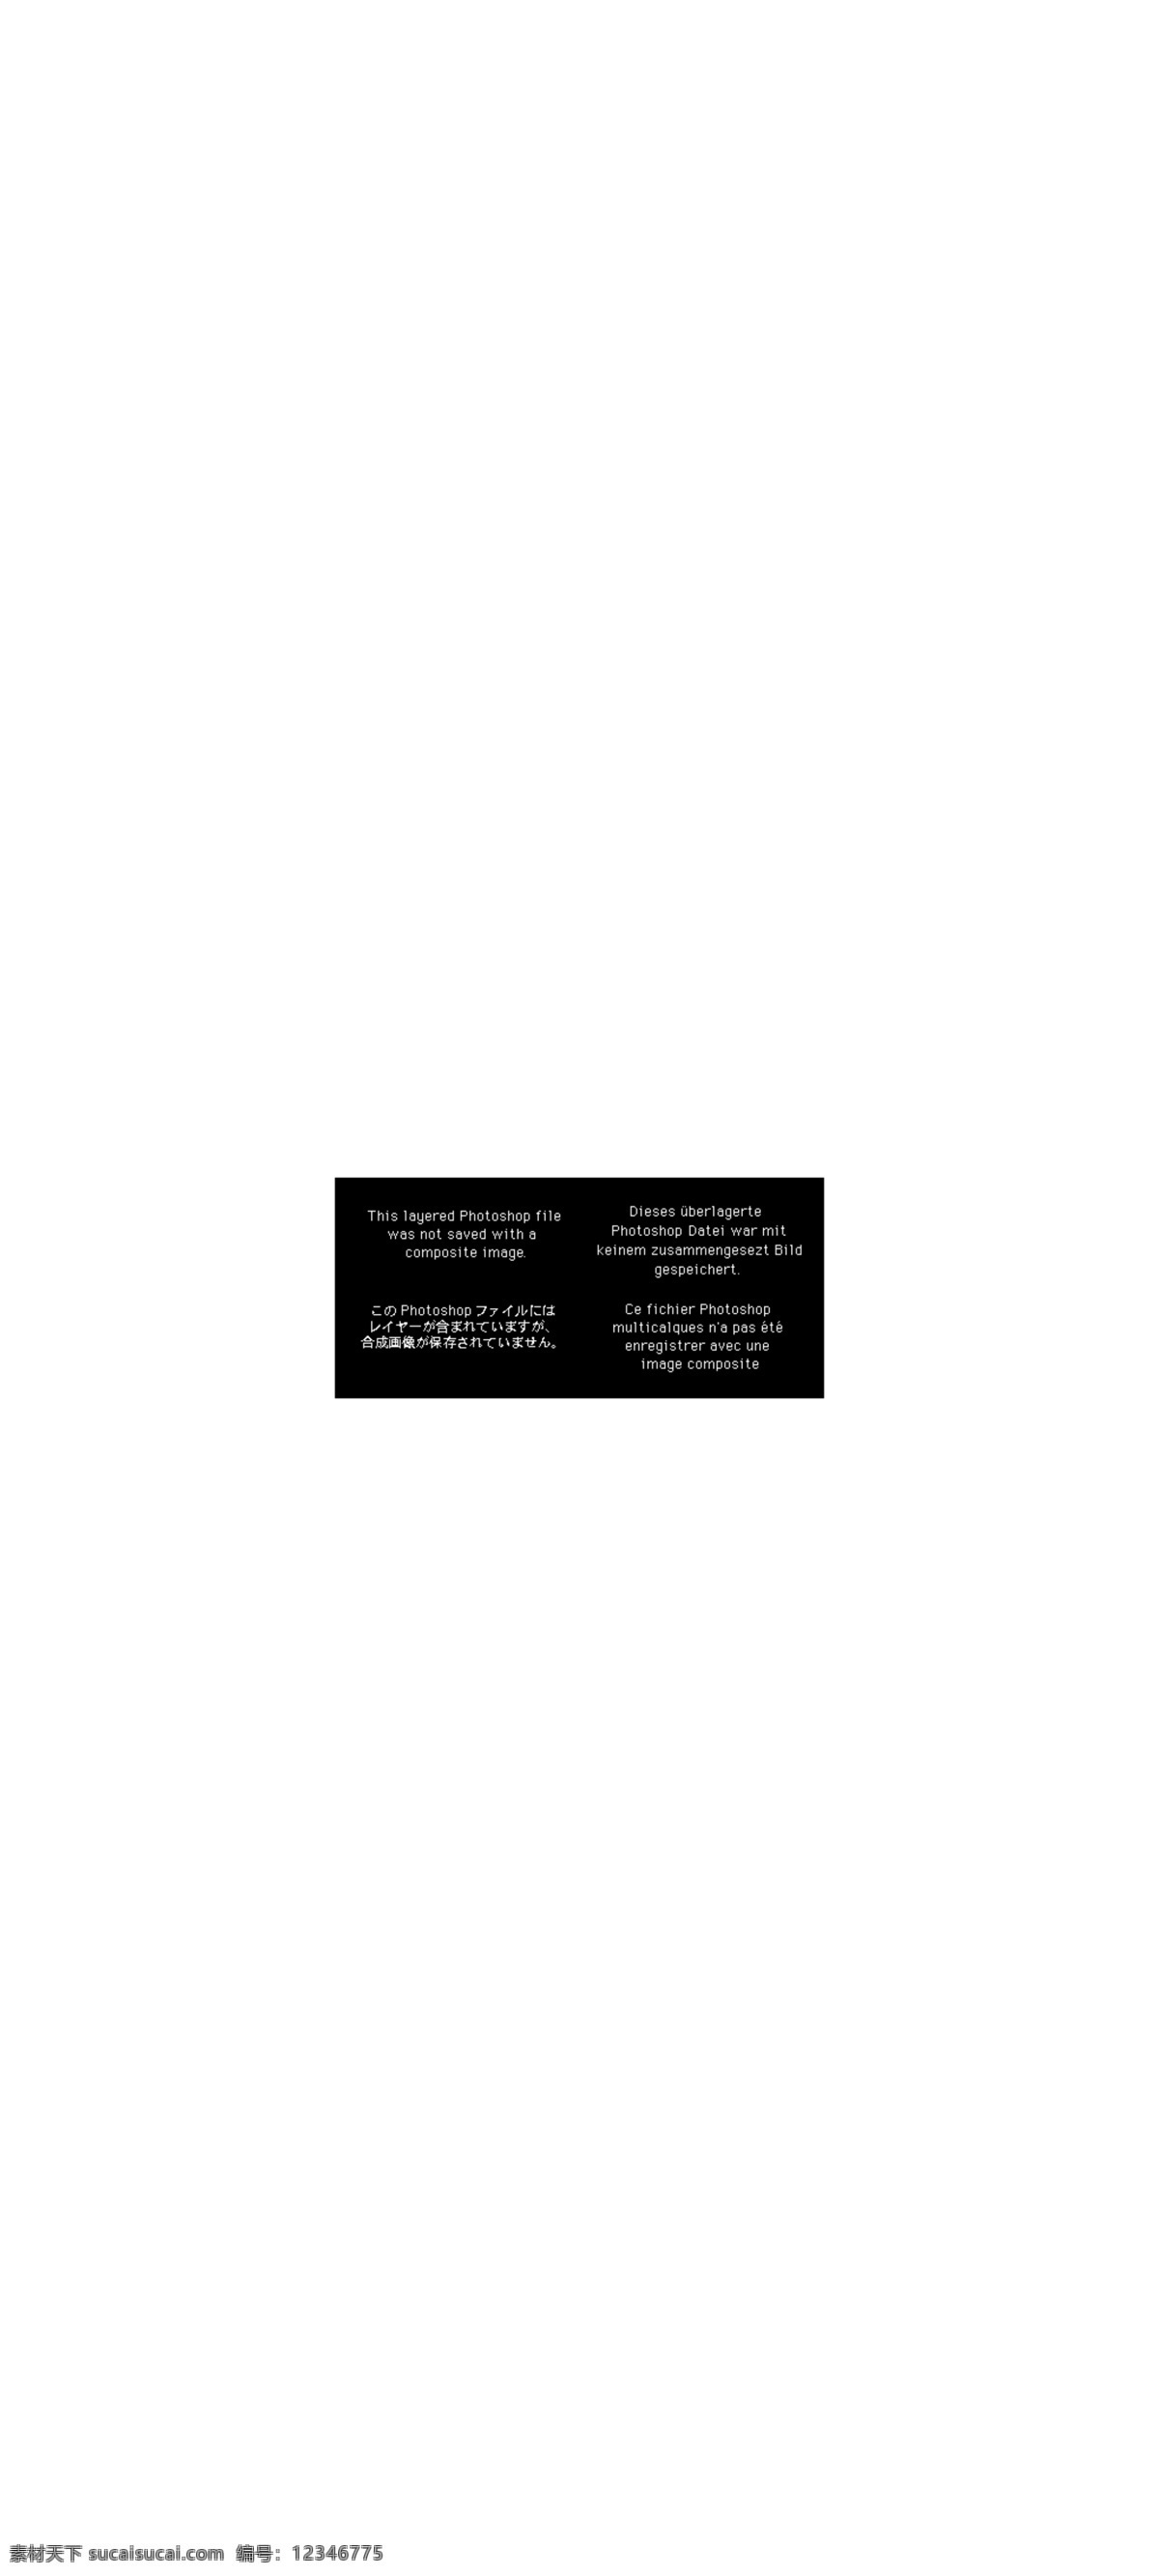 双 购物 狂欢 艺术 字 2017 首页 双11直通车 双11模板 双十一海报 双十一 双十一字体 双十一预售 淘宝 双十 毛笔字 双十一素材